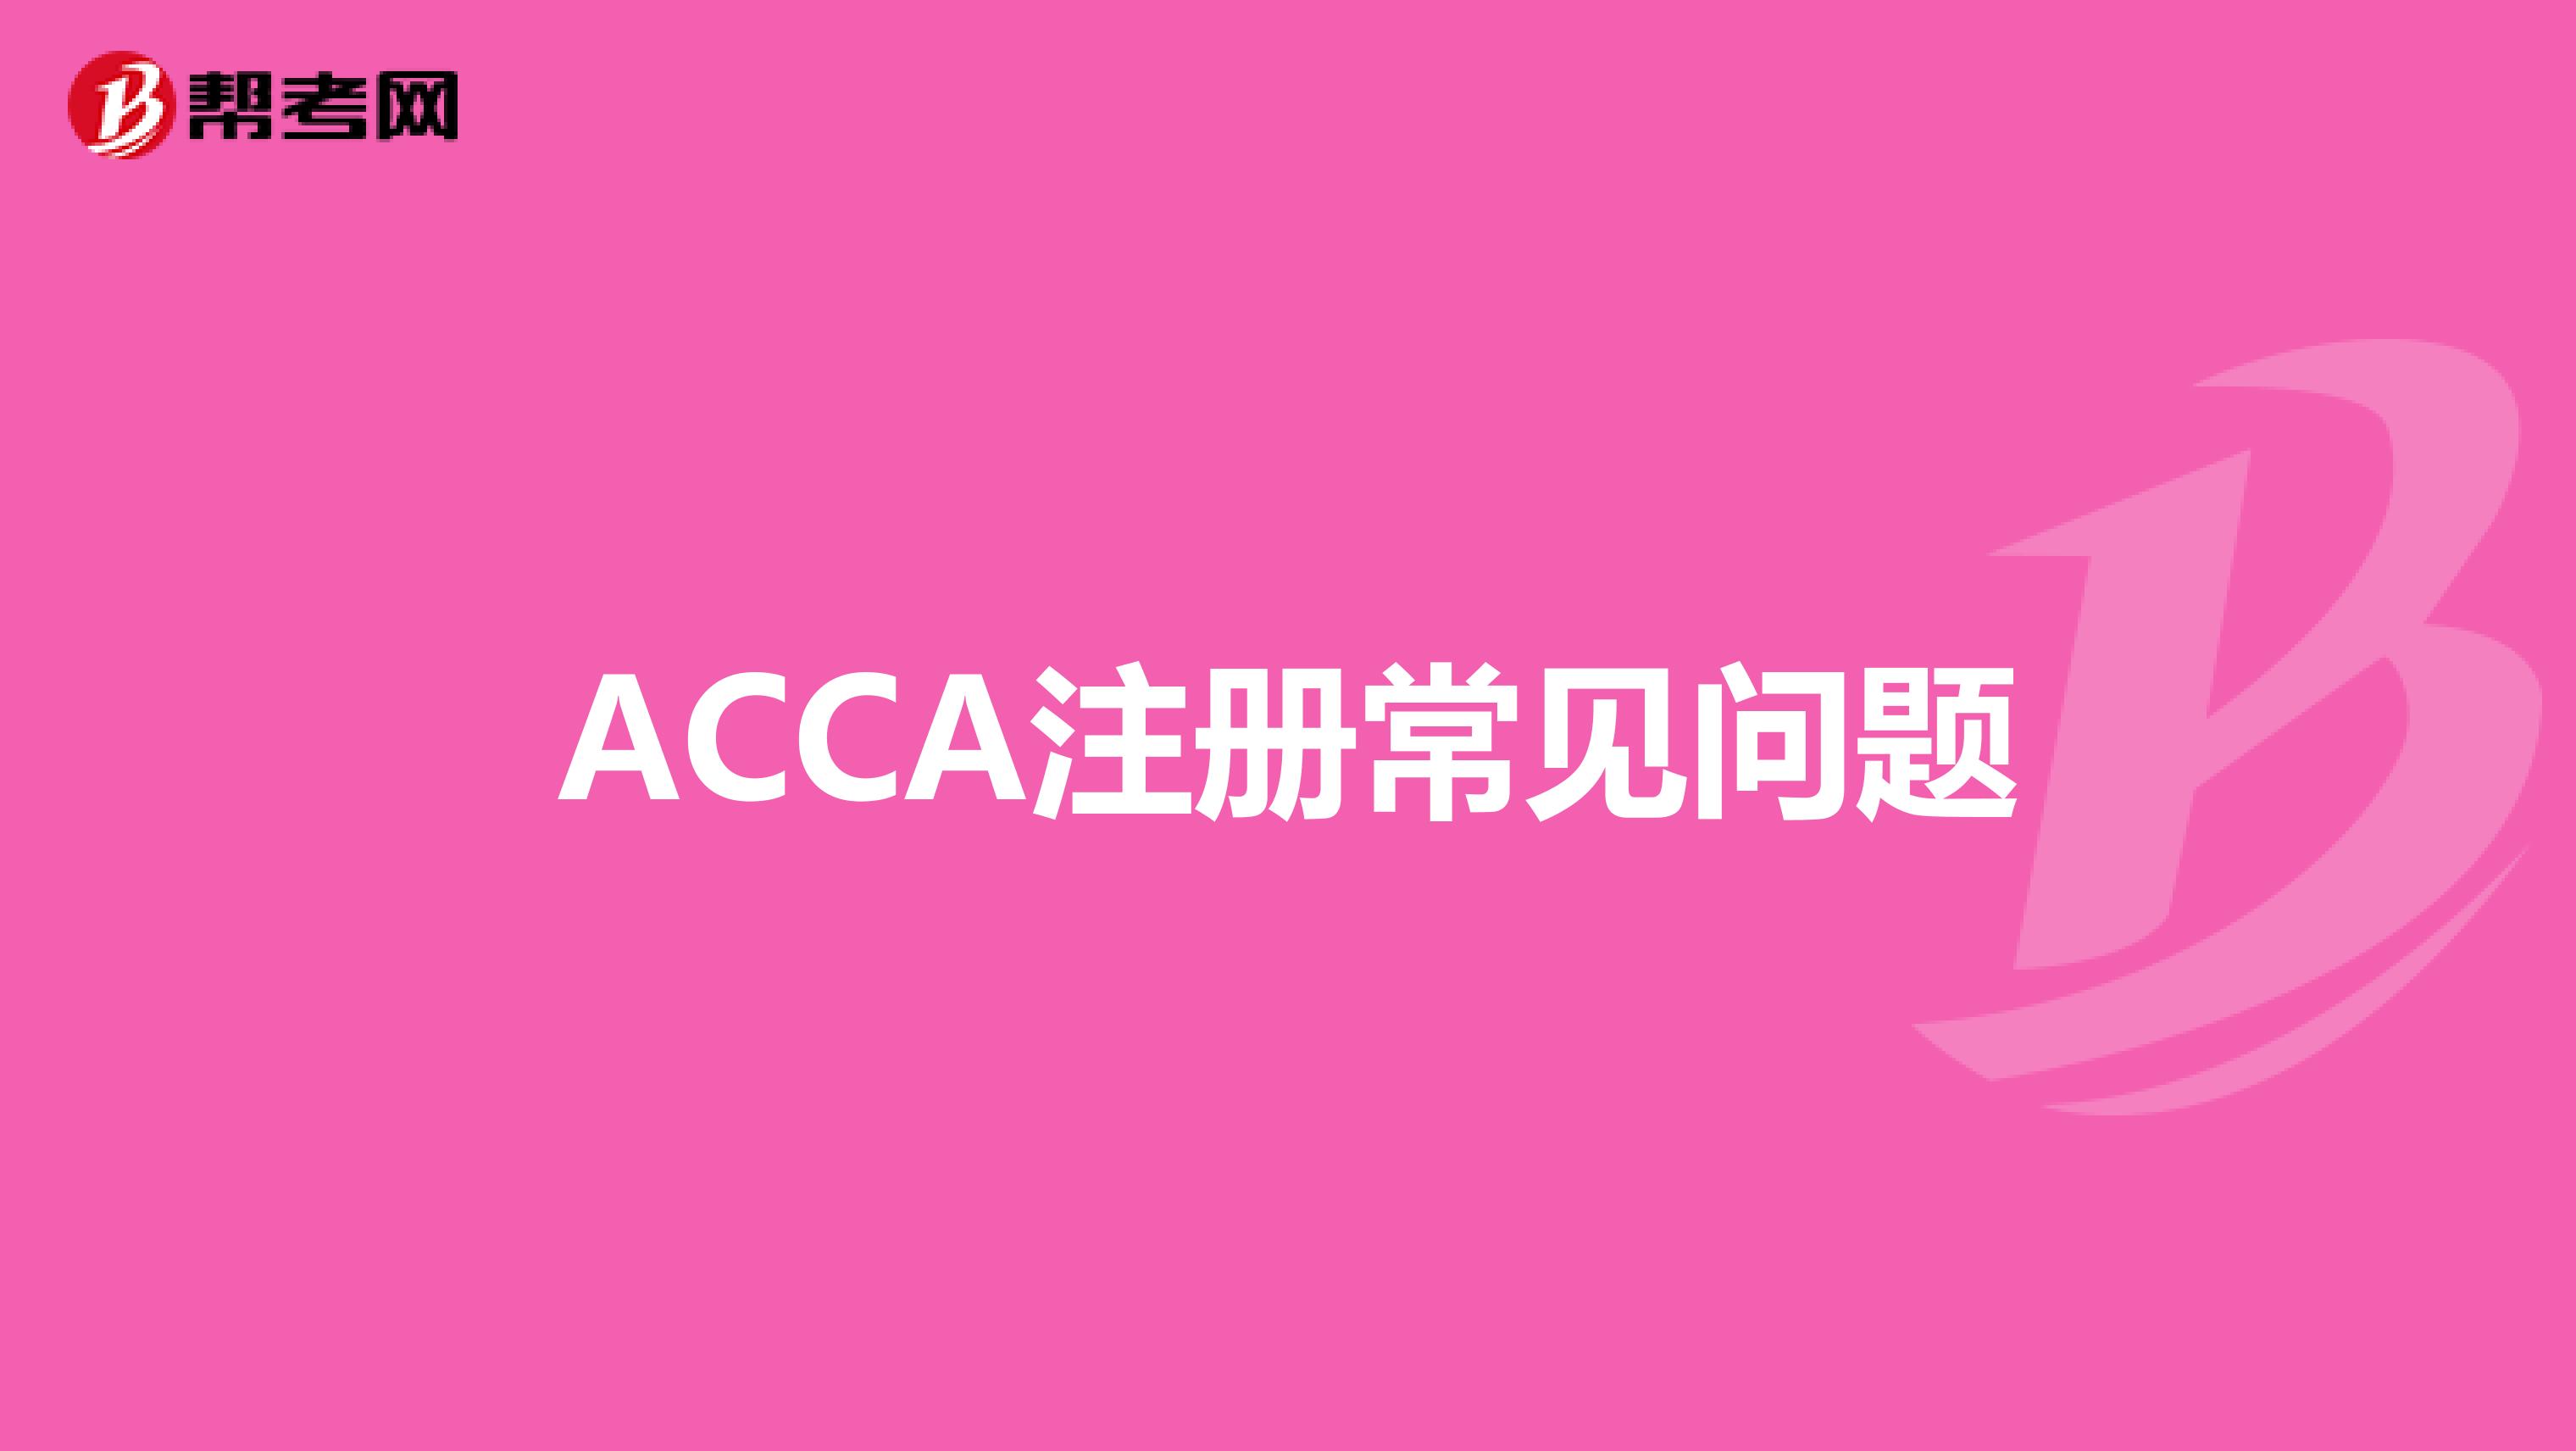 ACCA注册常见问题